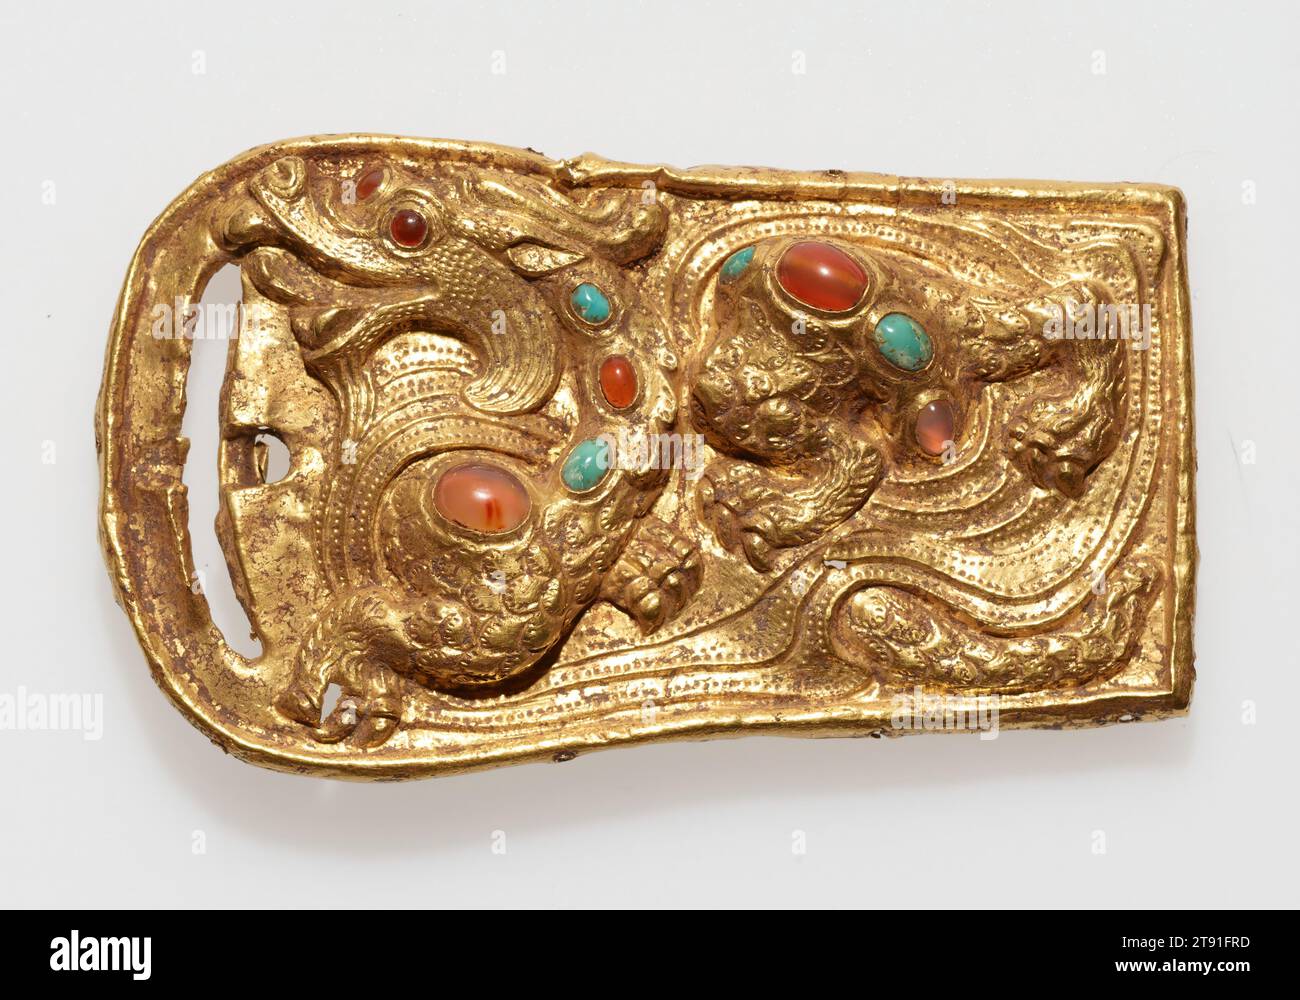 Boucle de ceinture, 1e-2e siècle, 2 1/2 x 4 1/4 x 9/16 po. (6,35 x 10,8 x 1,43 cm), Or, turquoise et agate, Chine, 1e-2e siècle, dans la Chine ancienne, l'or et l'argent n'ont pas reçu le statut élevé de laque et de jade. Avant la dynastie Tang (608-960), ces métaux précieux étaient principalement utilisés comme incrustation décorative sur le bronze et la laque et pour des ornements personnels tels que les épingles à cheveux et les crochets de ceinture. Faite d'or massif, cette boucle de ceinture rare est inhabituelle dans la forme, mais elle se rapporte à des exemples excavés, y compris une célèbre boucle récupérée du tombeau no. 9 à Sogam-ni, ancienne colonie Han de Lo-lang Banque D'Images